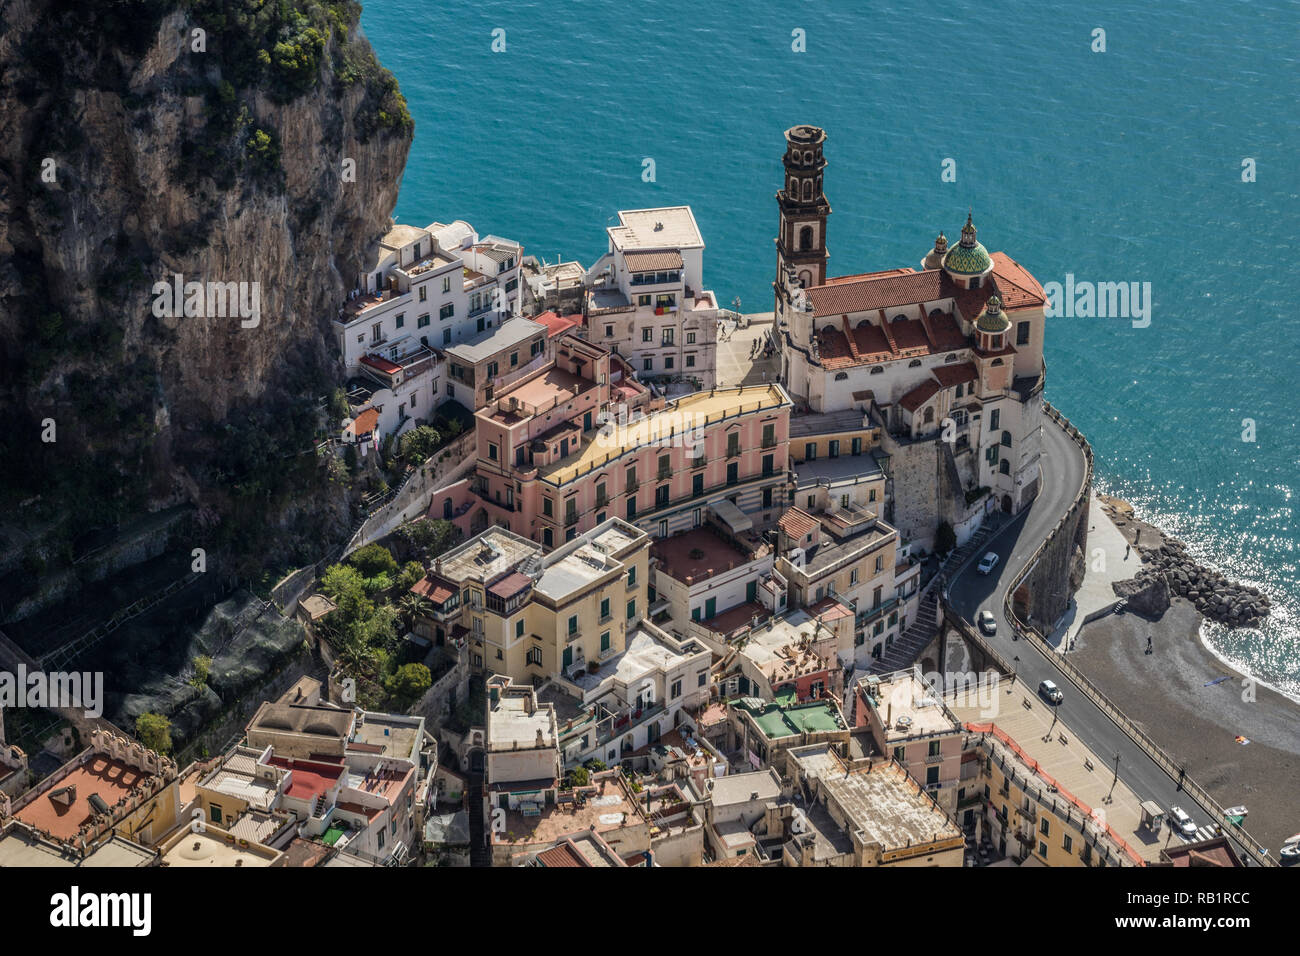 Very old town of Atrani in Amalfi coast Stock Photo